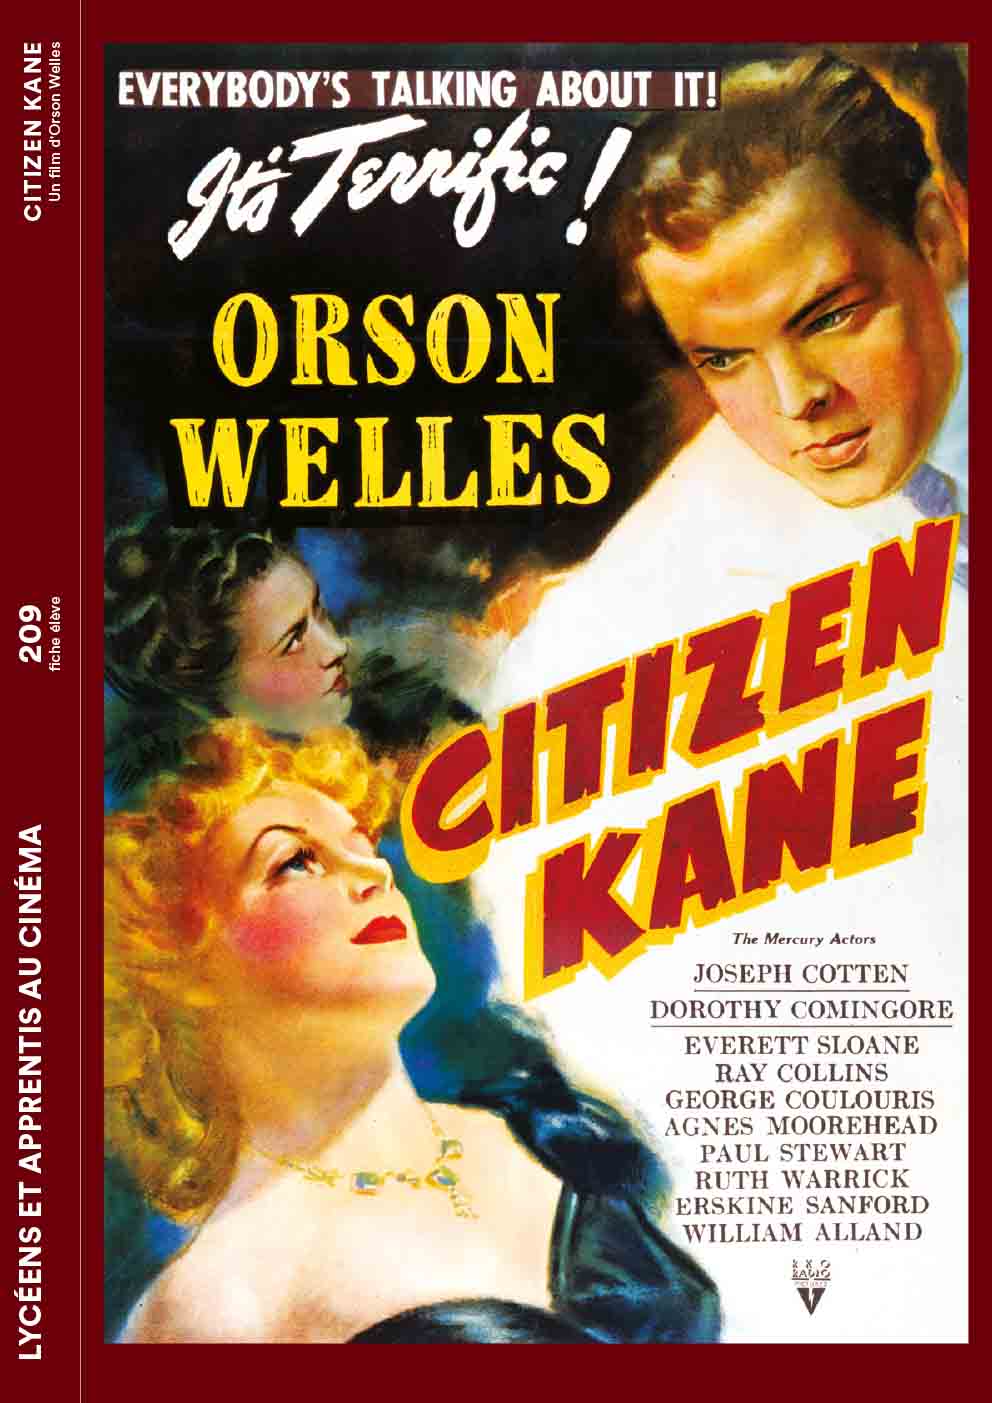 Couverture de la fiche élève du film Citizen Kane d'Orson Welles